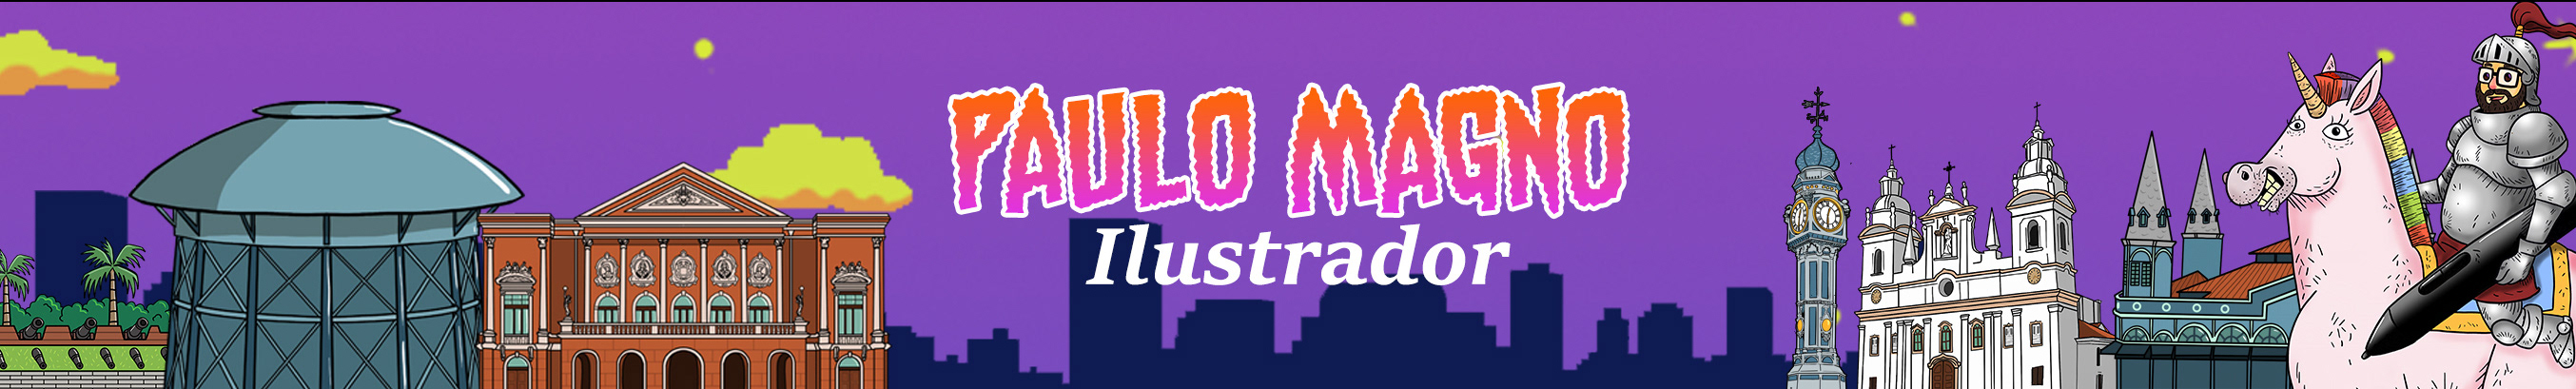 Paulo Magno's profile banner